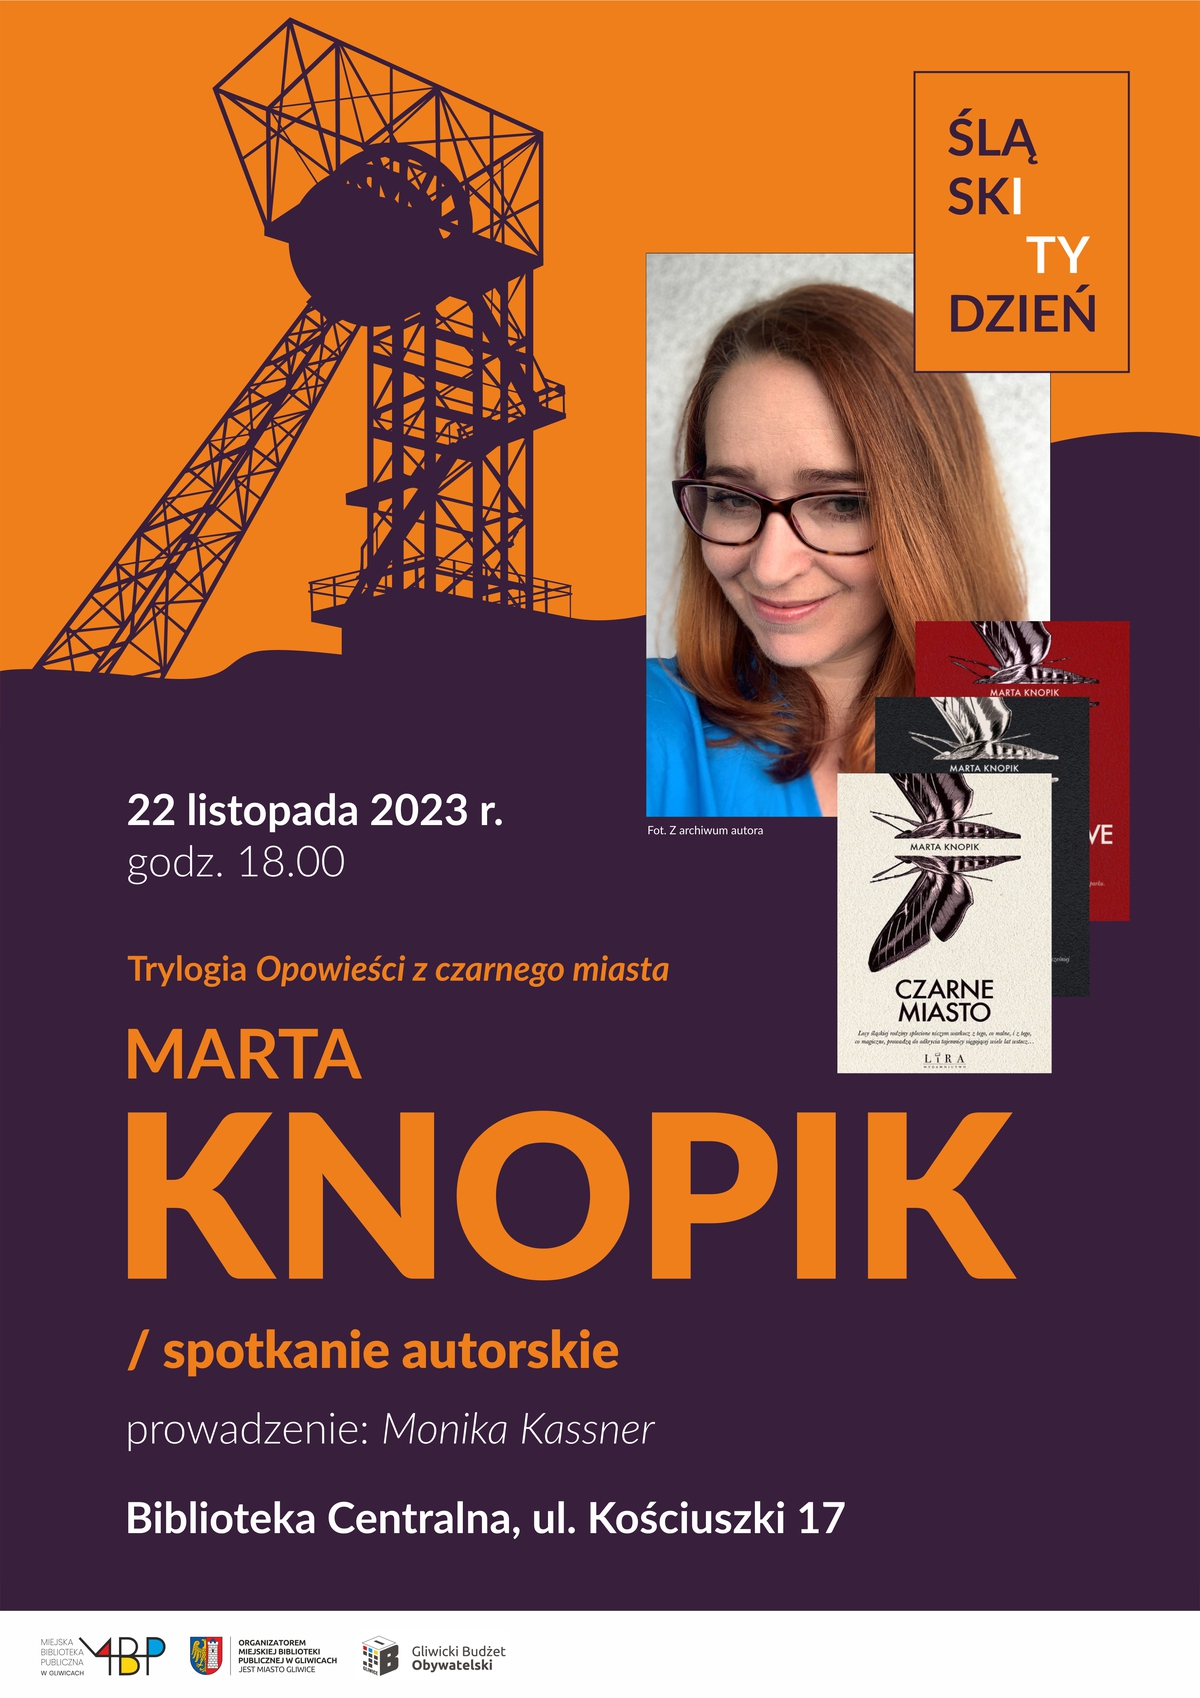 Plakat promujący spotkanie z Martą Knopik